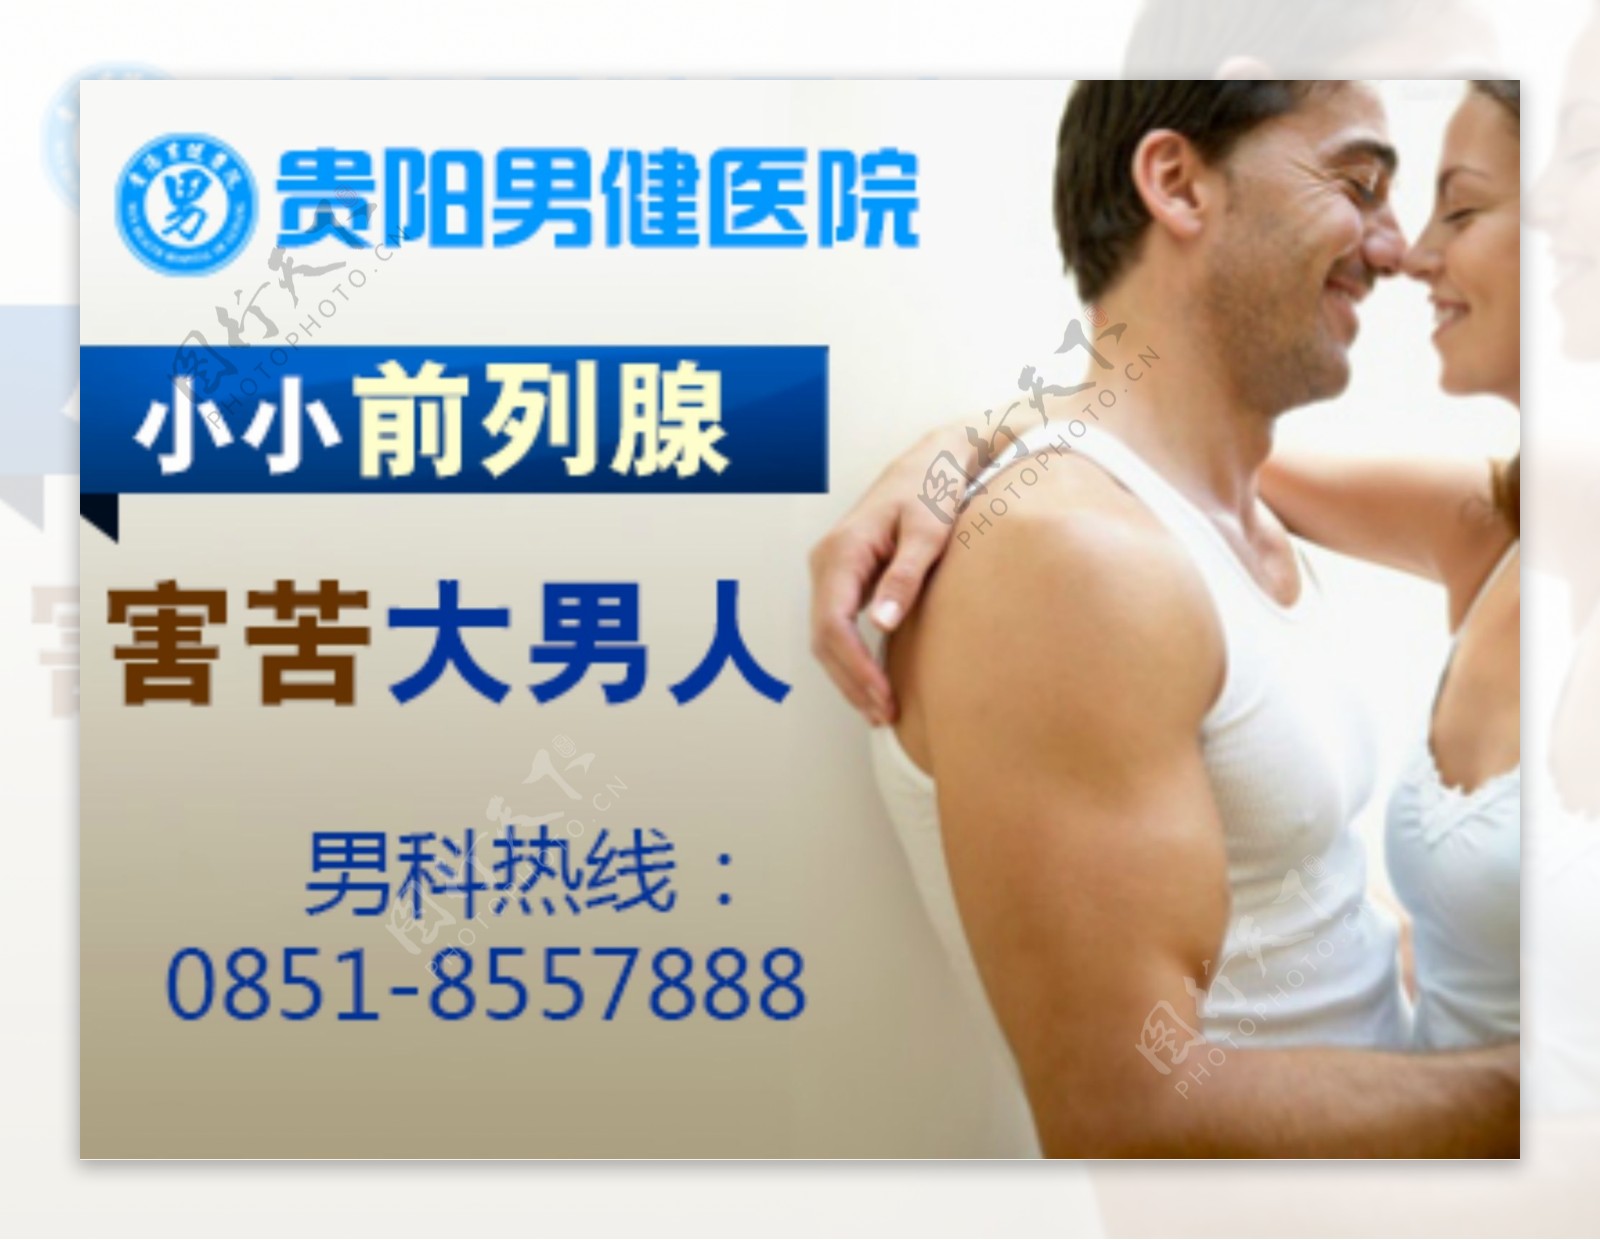 男科医院网站广告素材图片